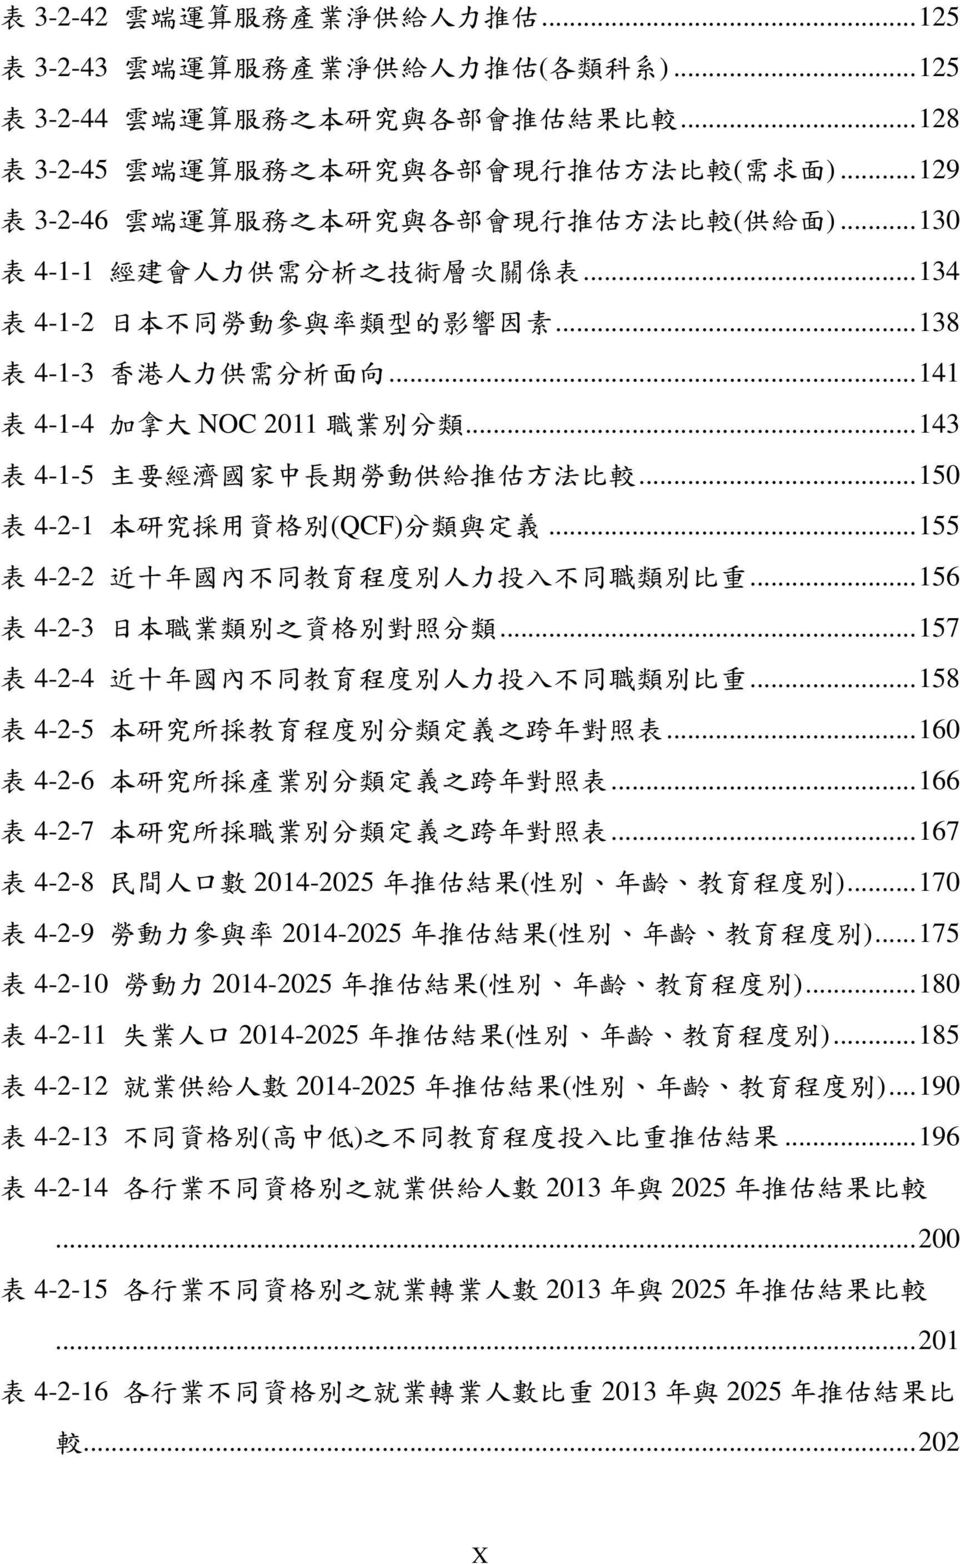 .. 134 表 4-1-2 日 本 不 同 勞 動 參 與 率 類 型 的 影 響 因 素... 138 表 4-1-3 香 港 人 力 供 需 分 析 面 向... 141 表 4-1-4 加 拿 大 NOC 2011 職 業 別 分 類... 143 表 4-1-5 主 要 經 濟 國 家 中 長 期 勞 動 供 給 推 估 方 法 比 較.